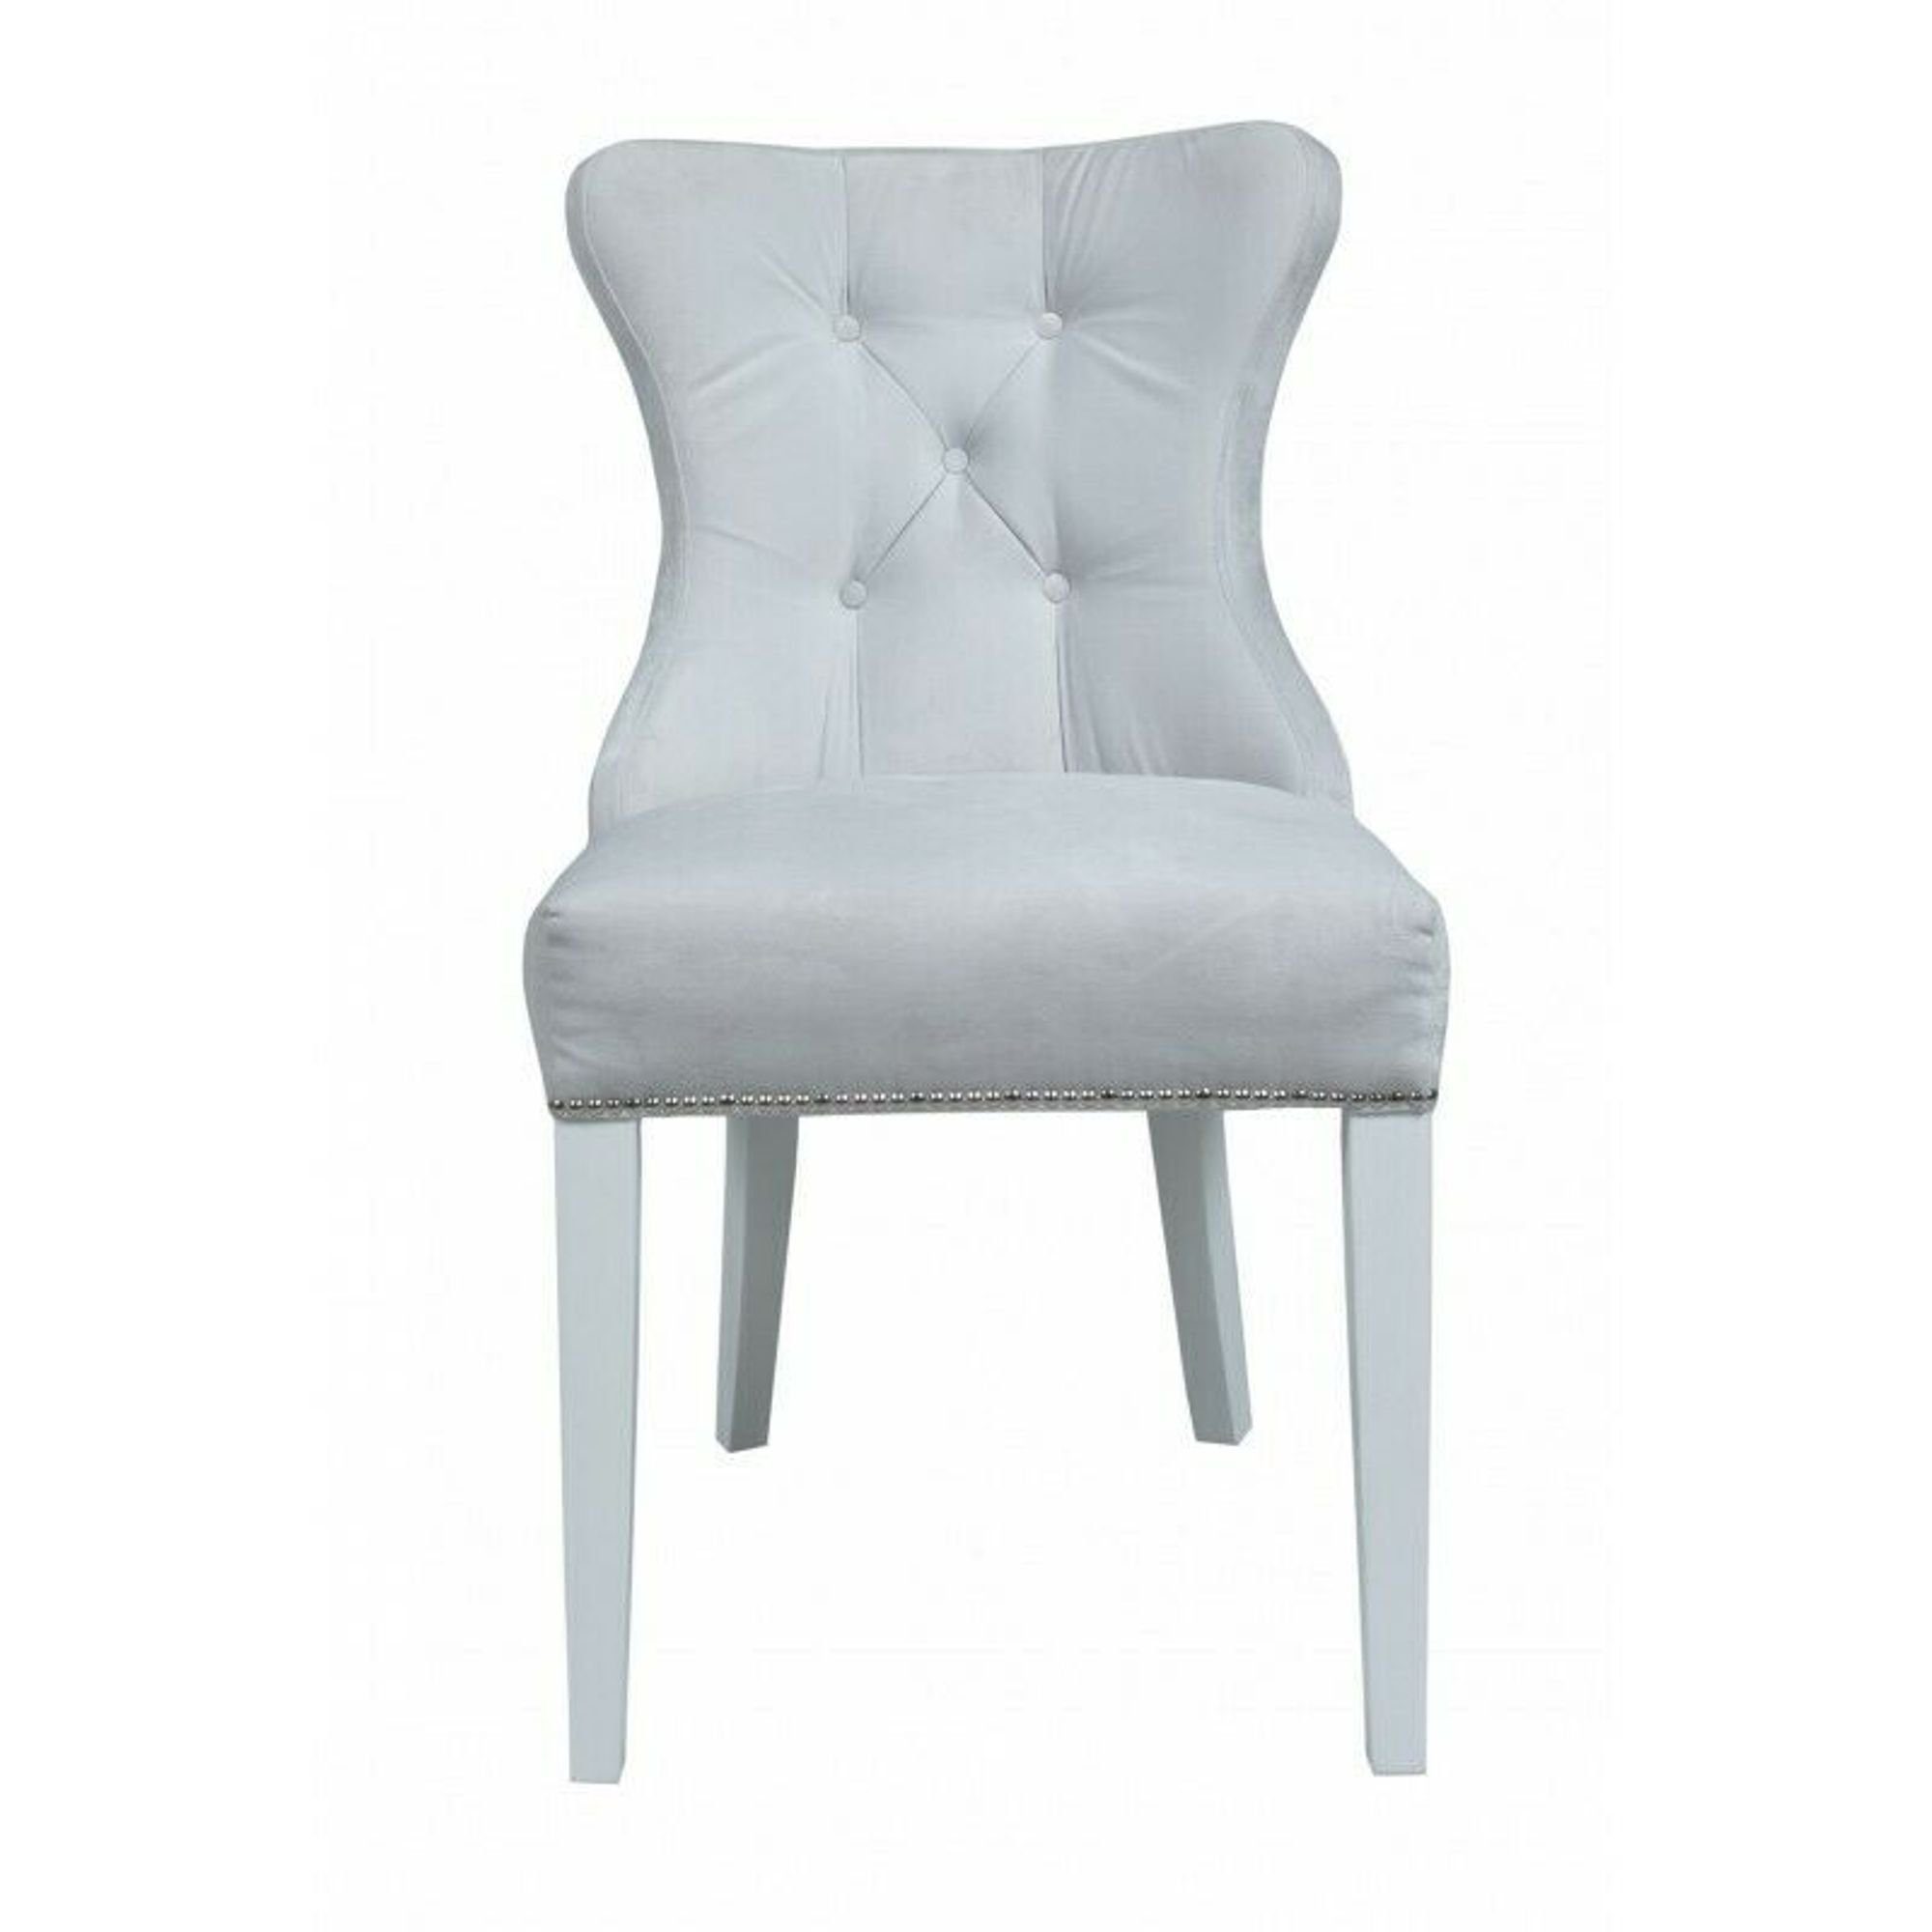 JVmoebel Stuhl, Klassische 1 Sühle Stuhl Lehn Sitzer Chesterfield Polster Textil Sessel Grau